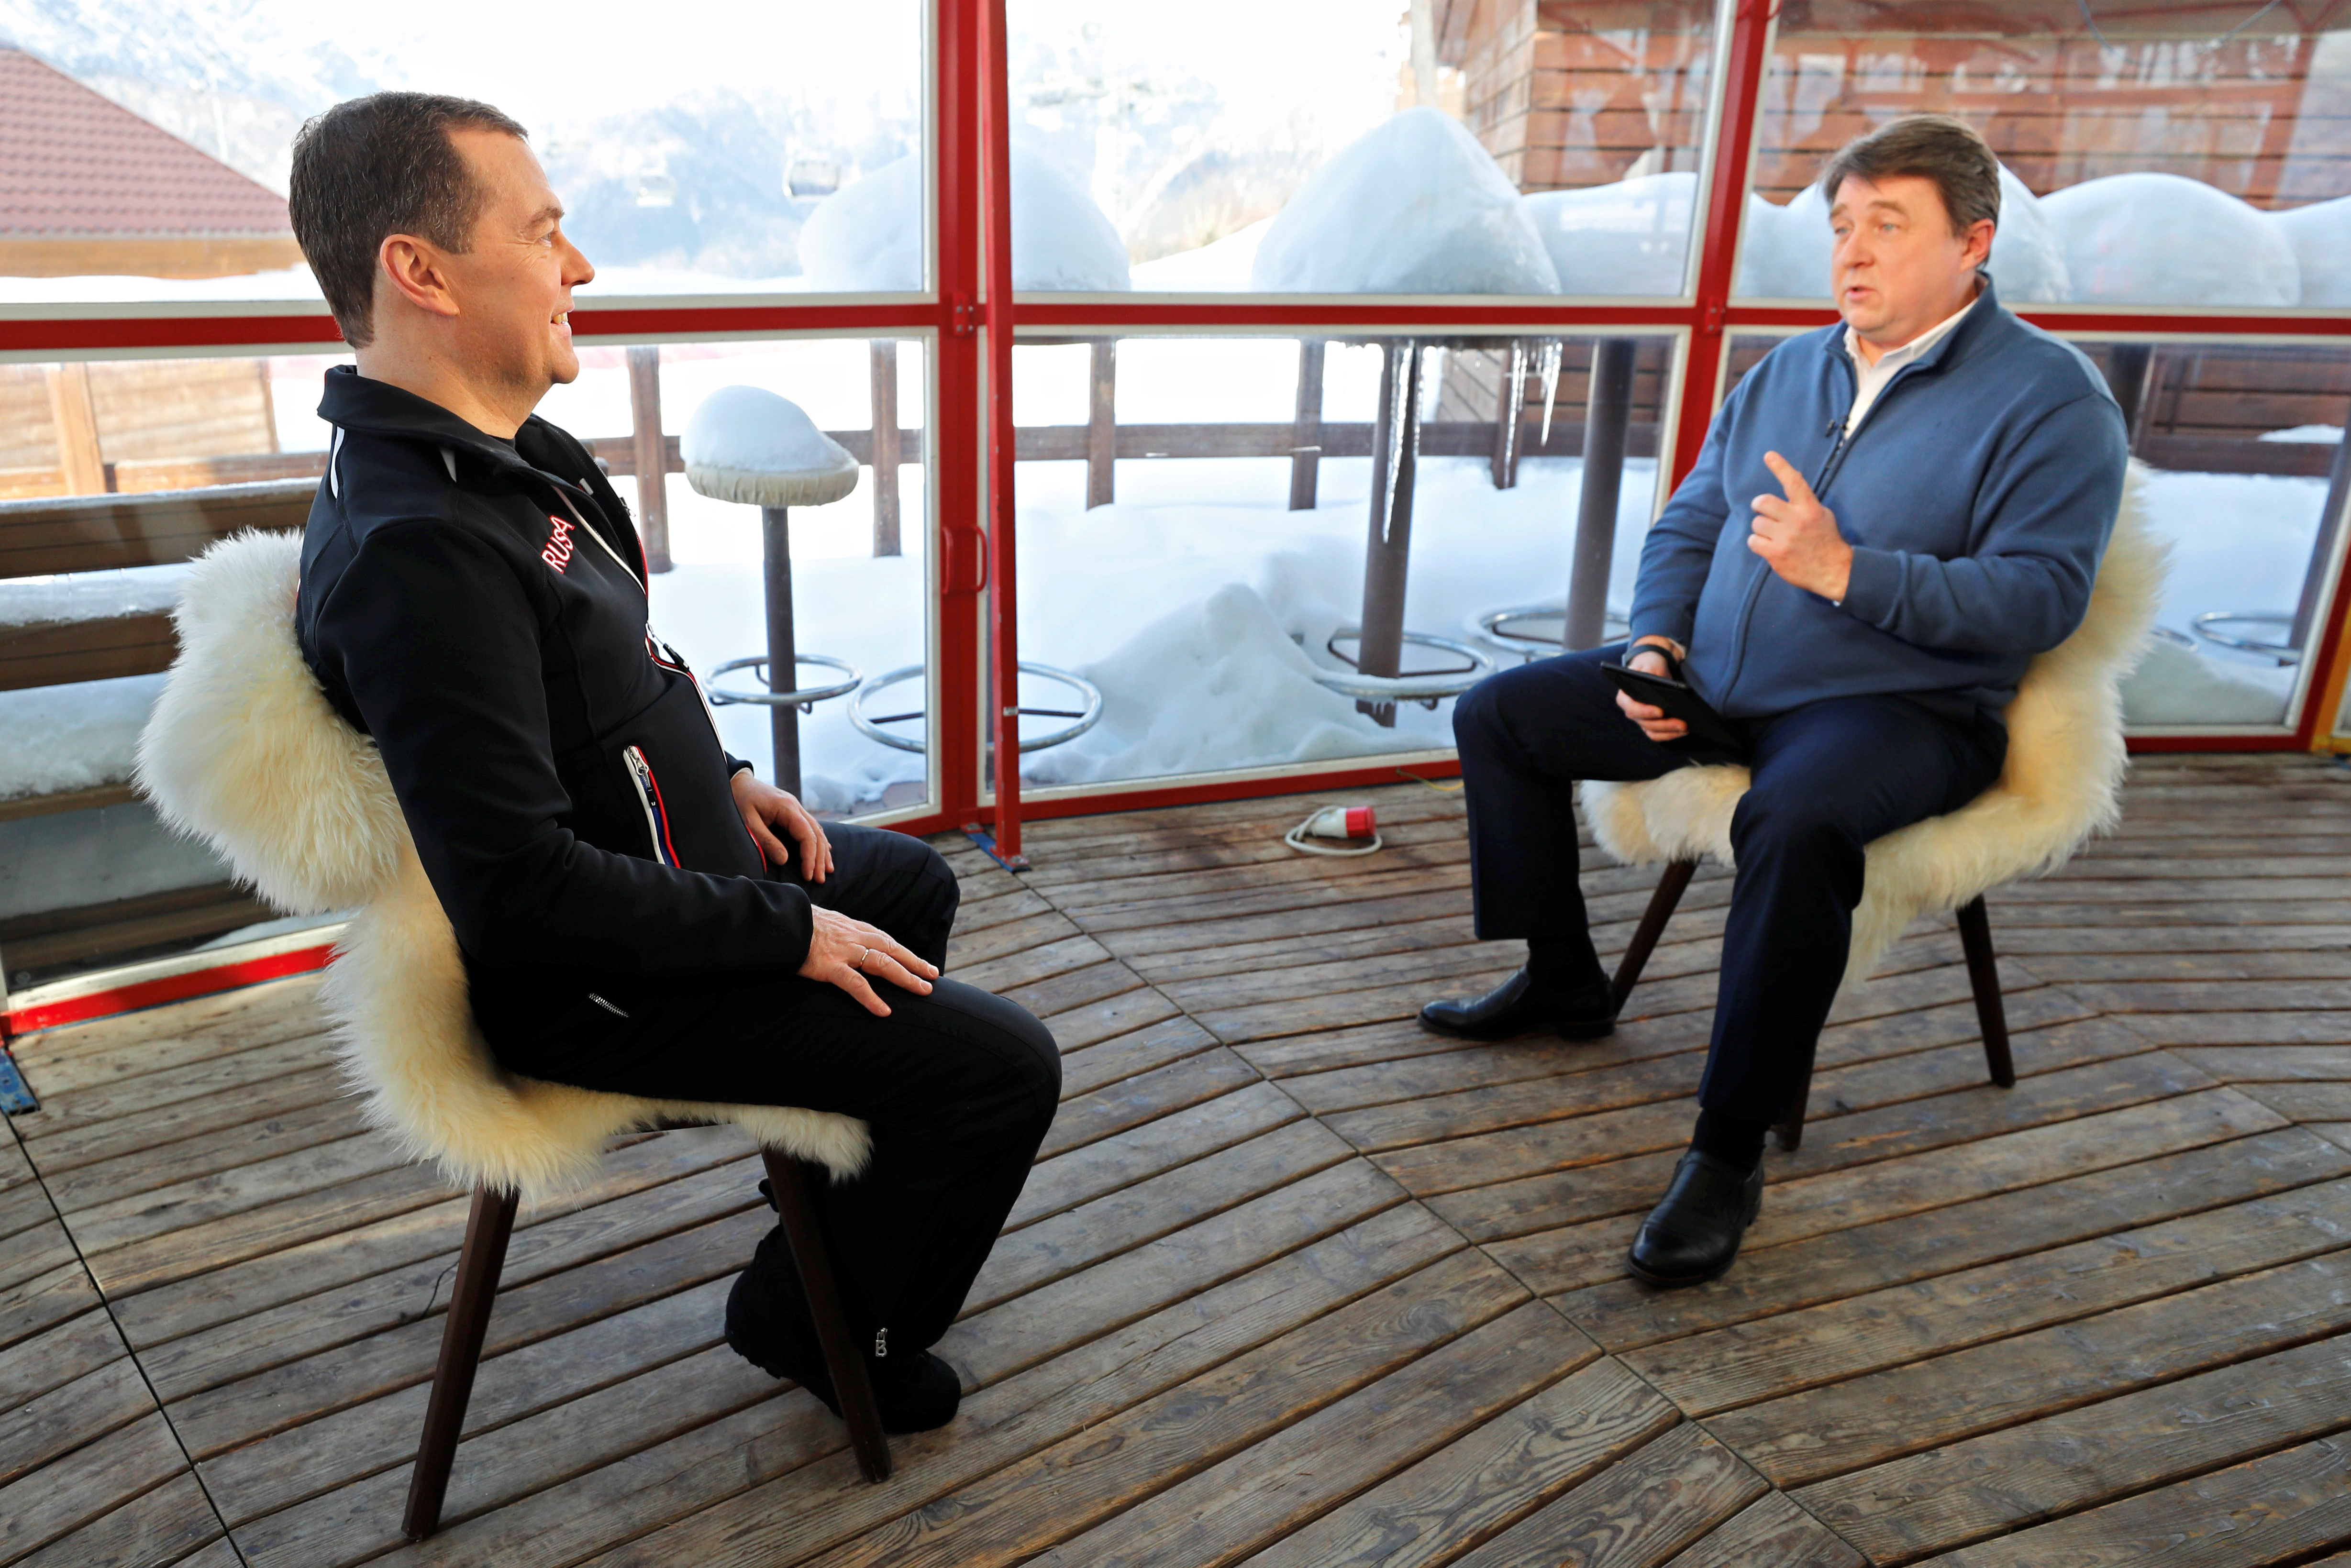 Интервью российским сми дмитрия медведева. Медведев в пальто. Пальто Медведева.